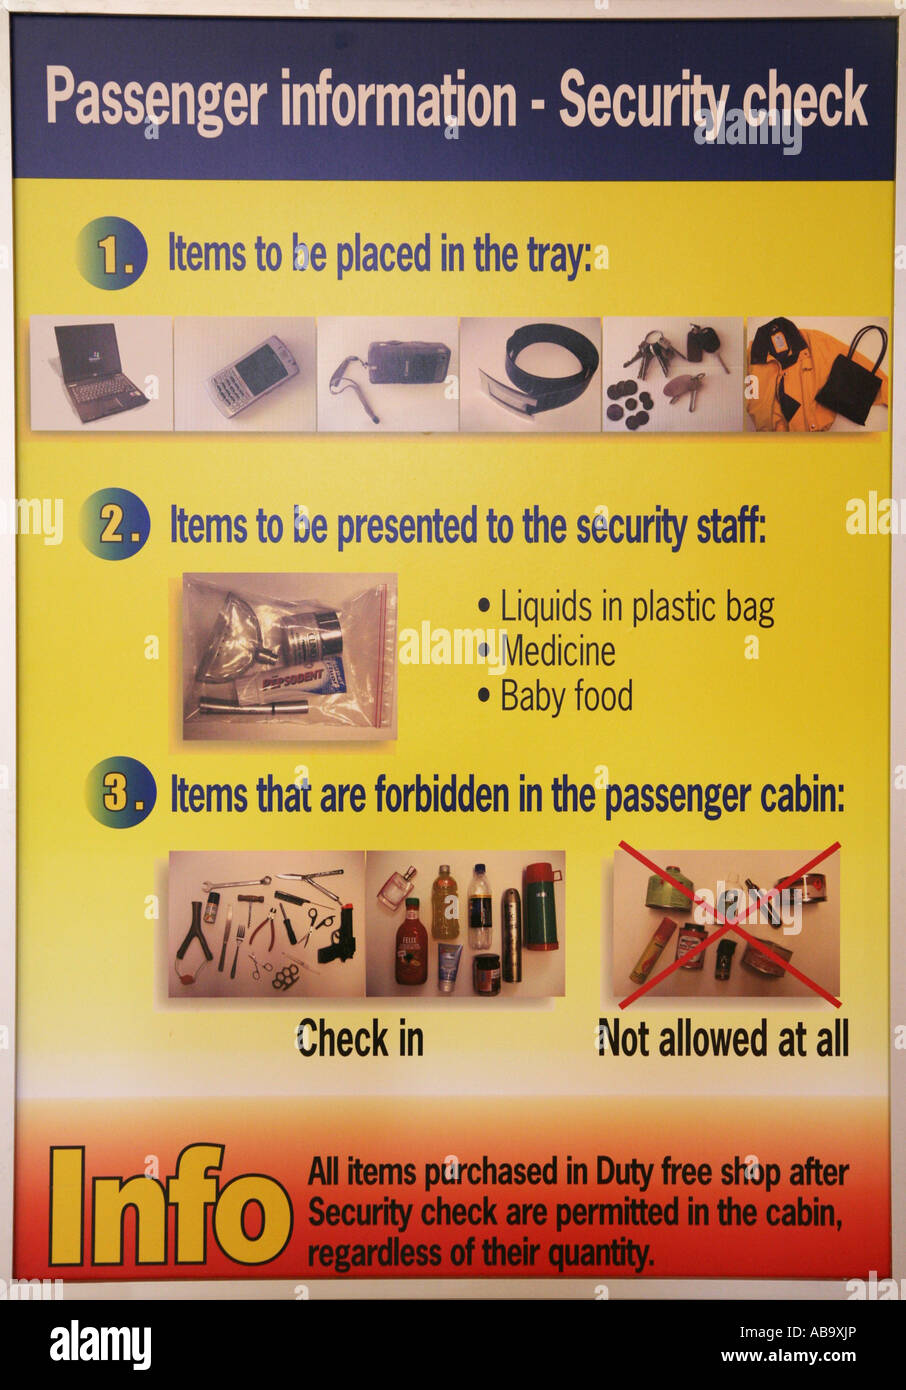 Affiche de sécurité de l'aéroport passagers informer quels articles sont admis dans la cabine et les éléments non passanger admis à tous les Banque D'Images